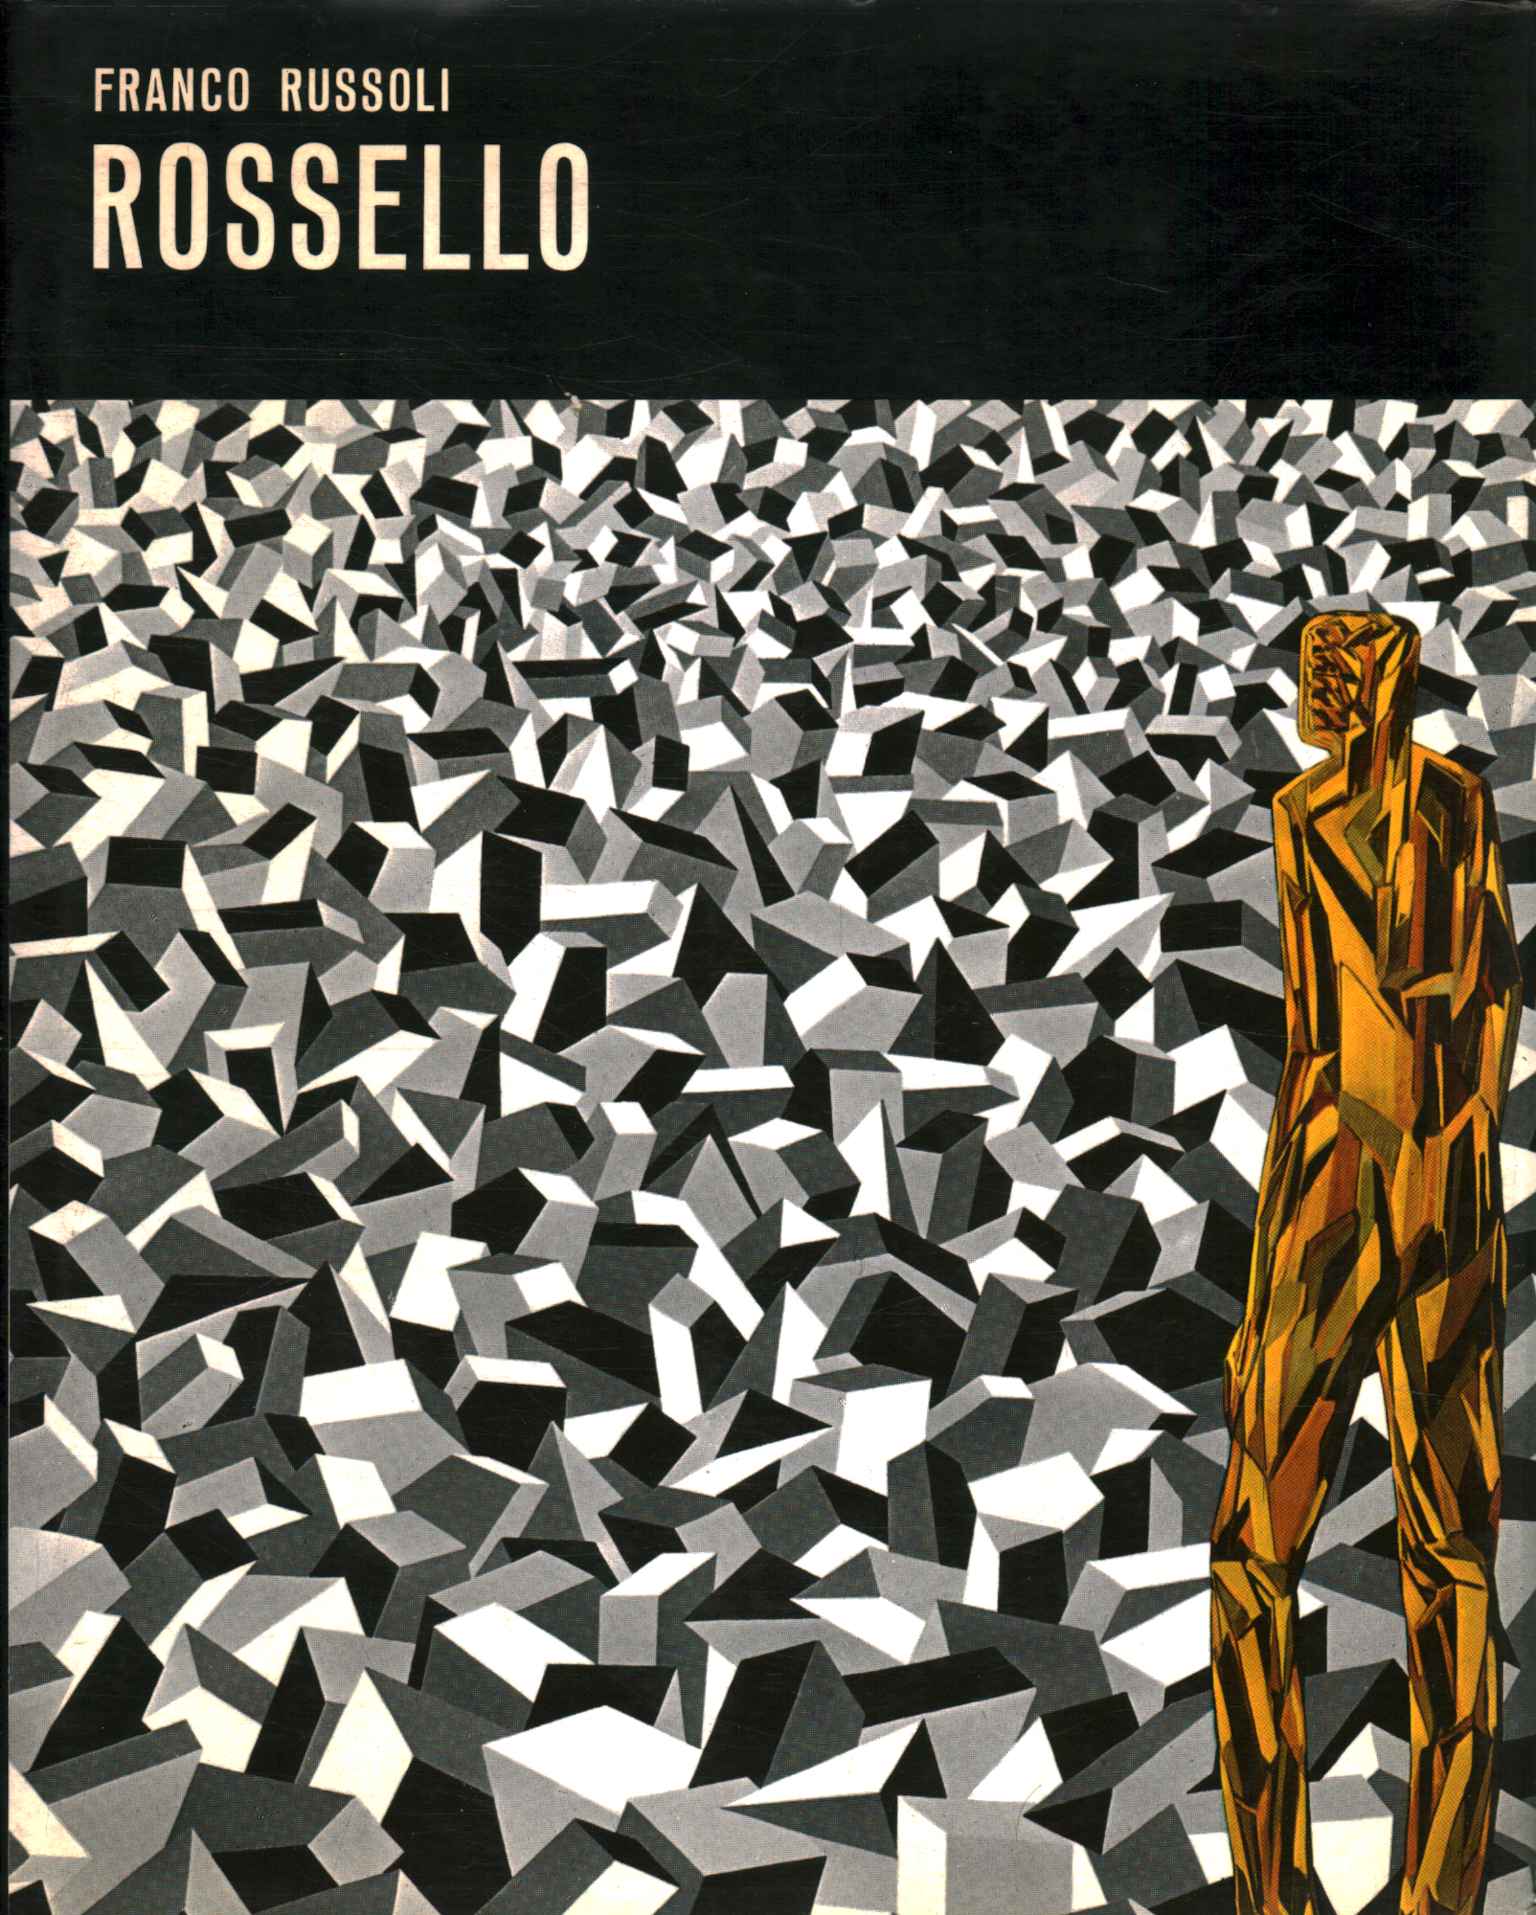 Libri - Arte - Contemporanea,Franco Russoli Rossello